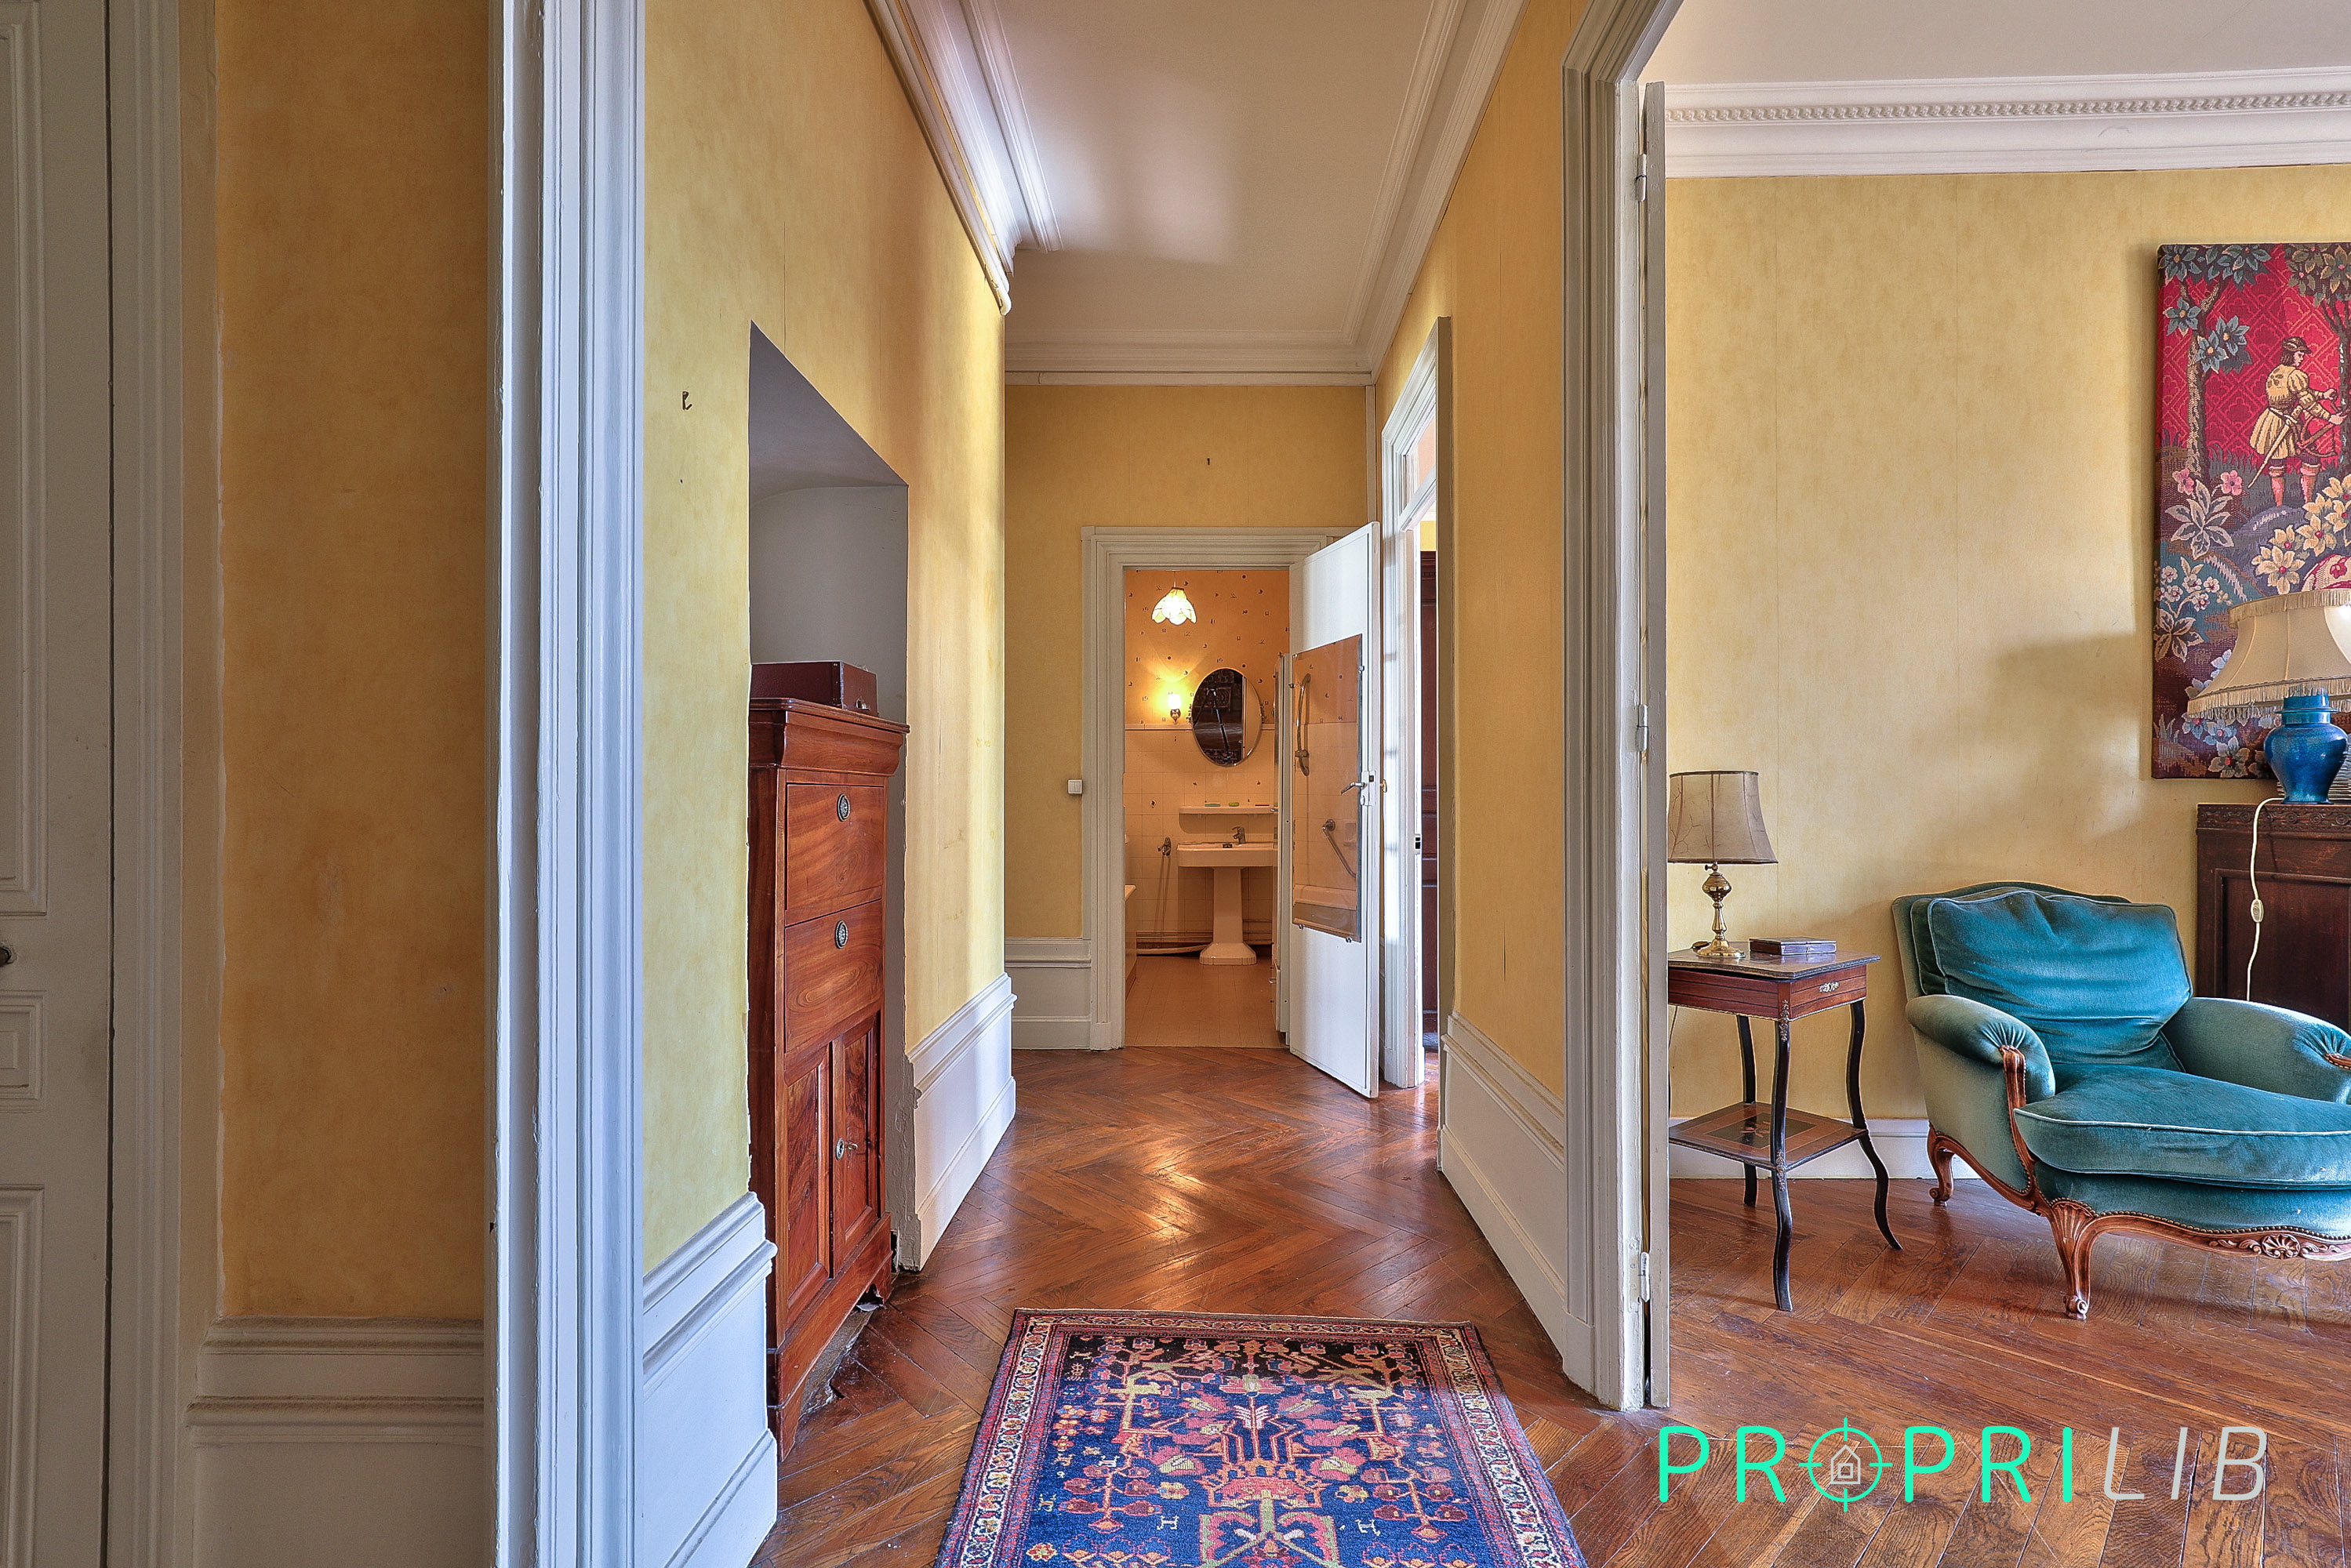 PropriLib l’agence immobilière en ligne au forfait vend cet appartement à Lyon 3ème